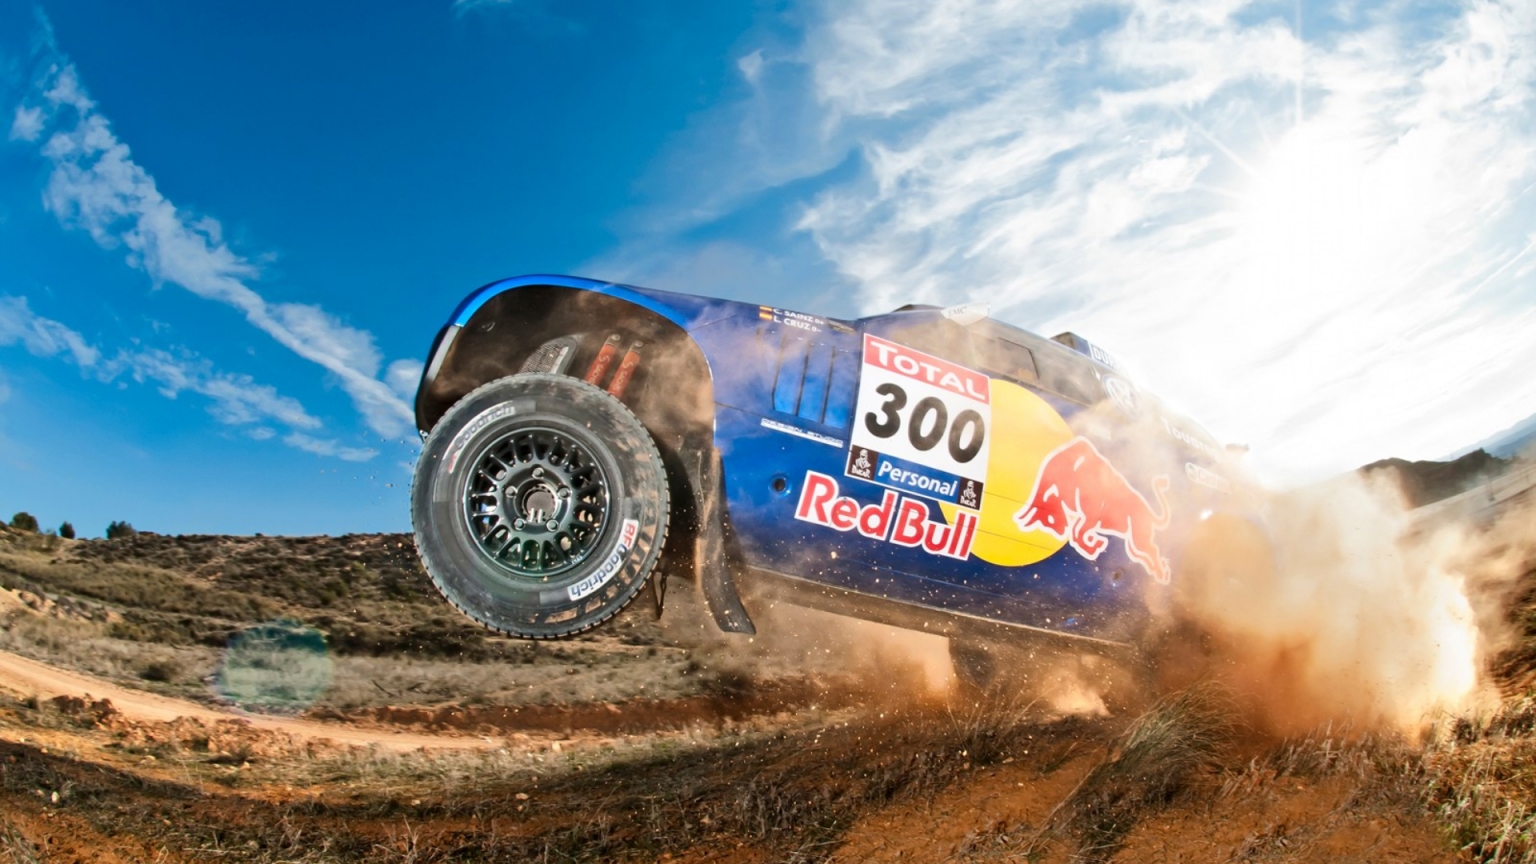 Volkswagen Dakar Race for 1536 x 864 HDTV resolution